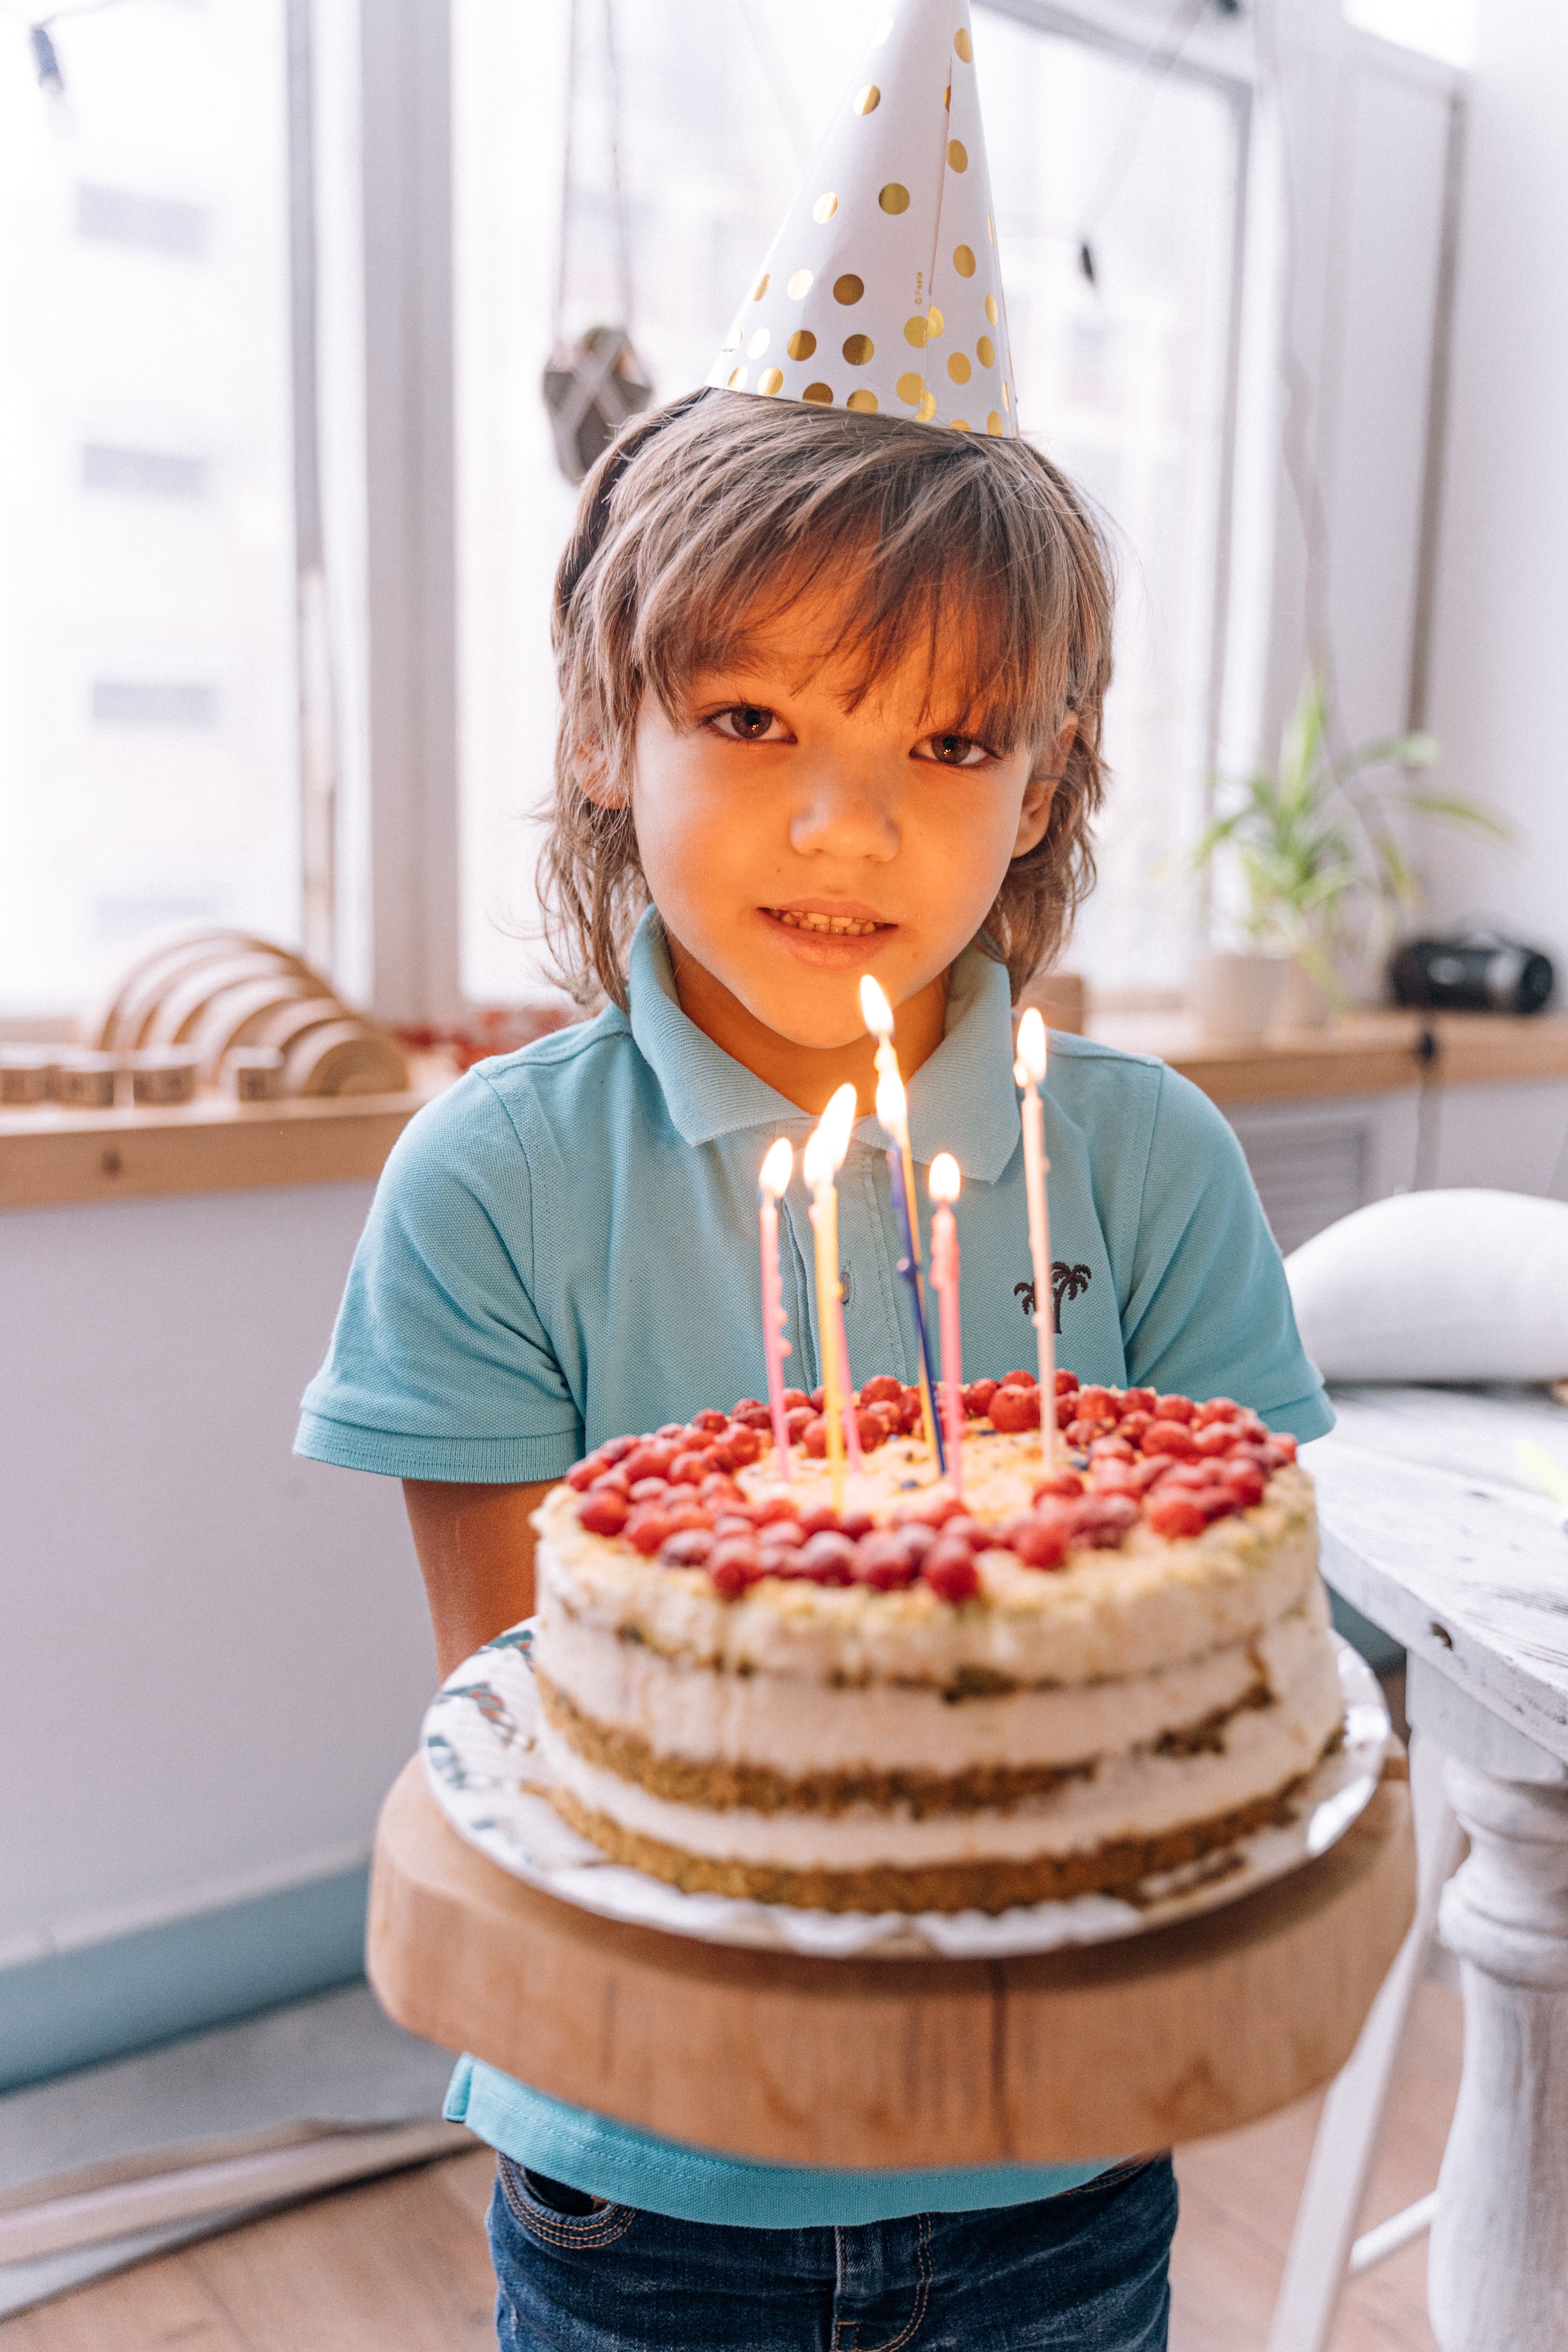 Emily hat Charley einen Kuchen zu seinem Geburtstag gebacken | Quelle: Pexels